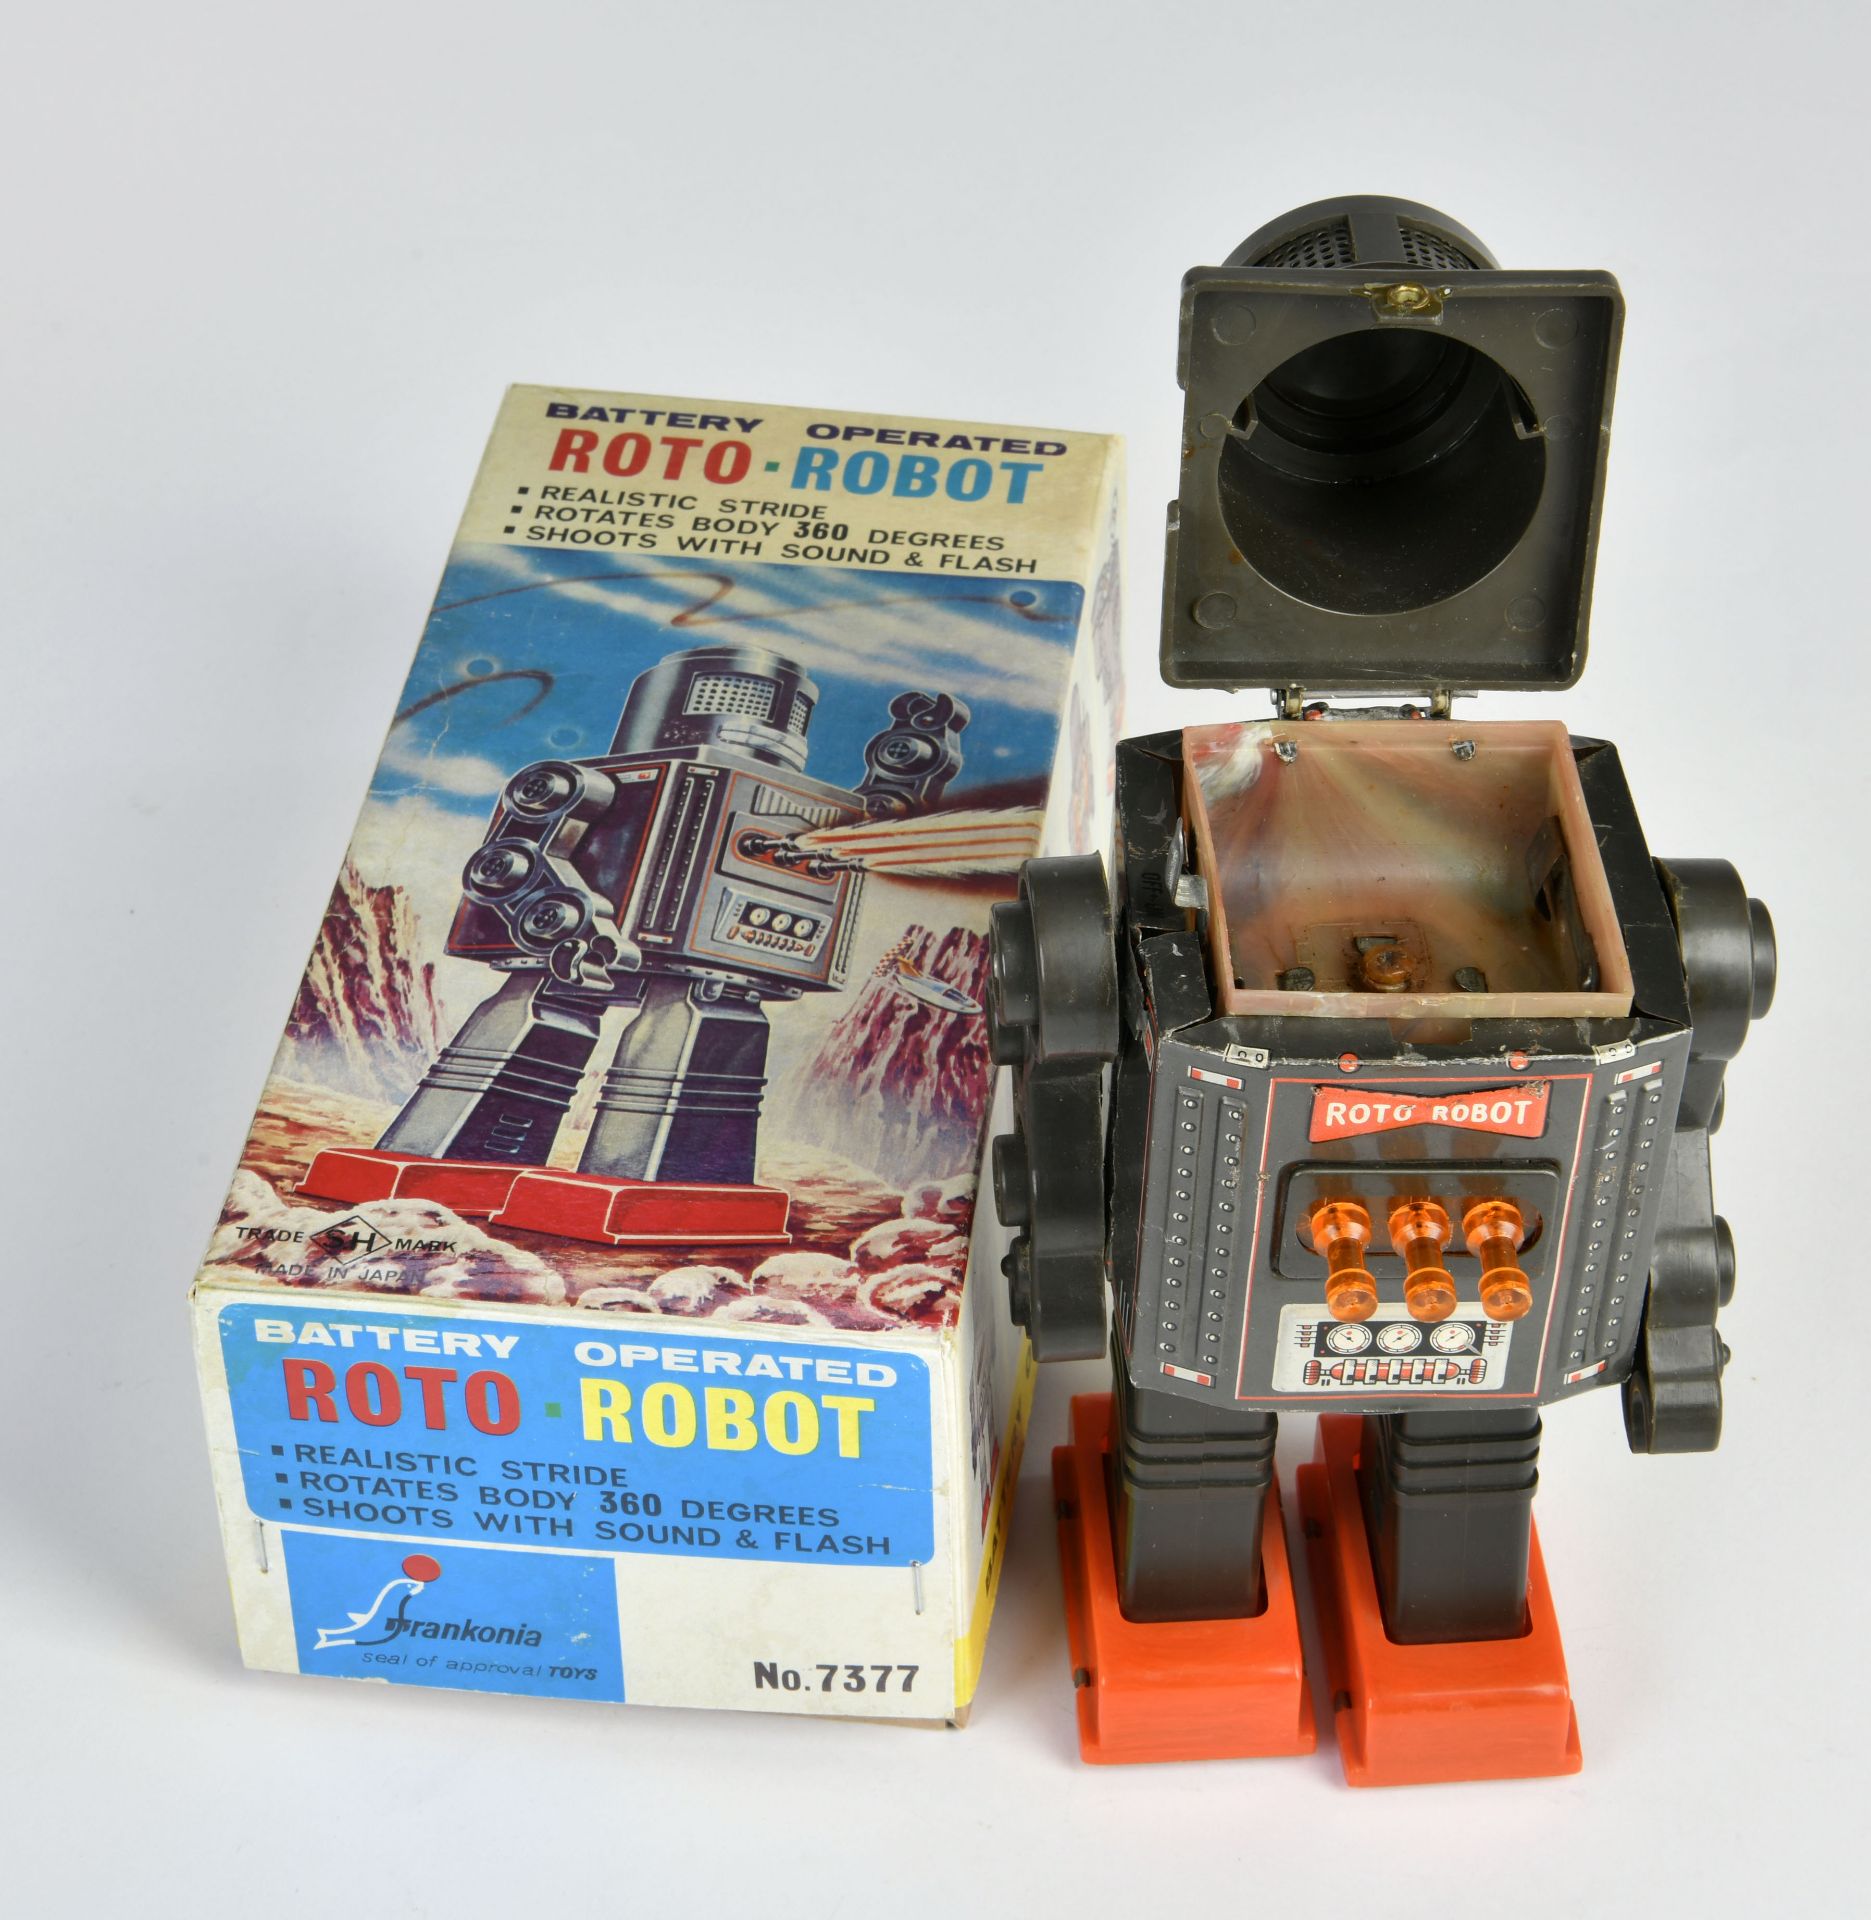 Horikawa, Roto-Robot, Japan, mixed constr, bat.drive ok, 22cm, repro box C2 - Image 2 of 2